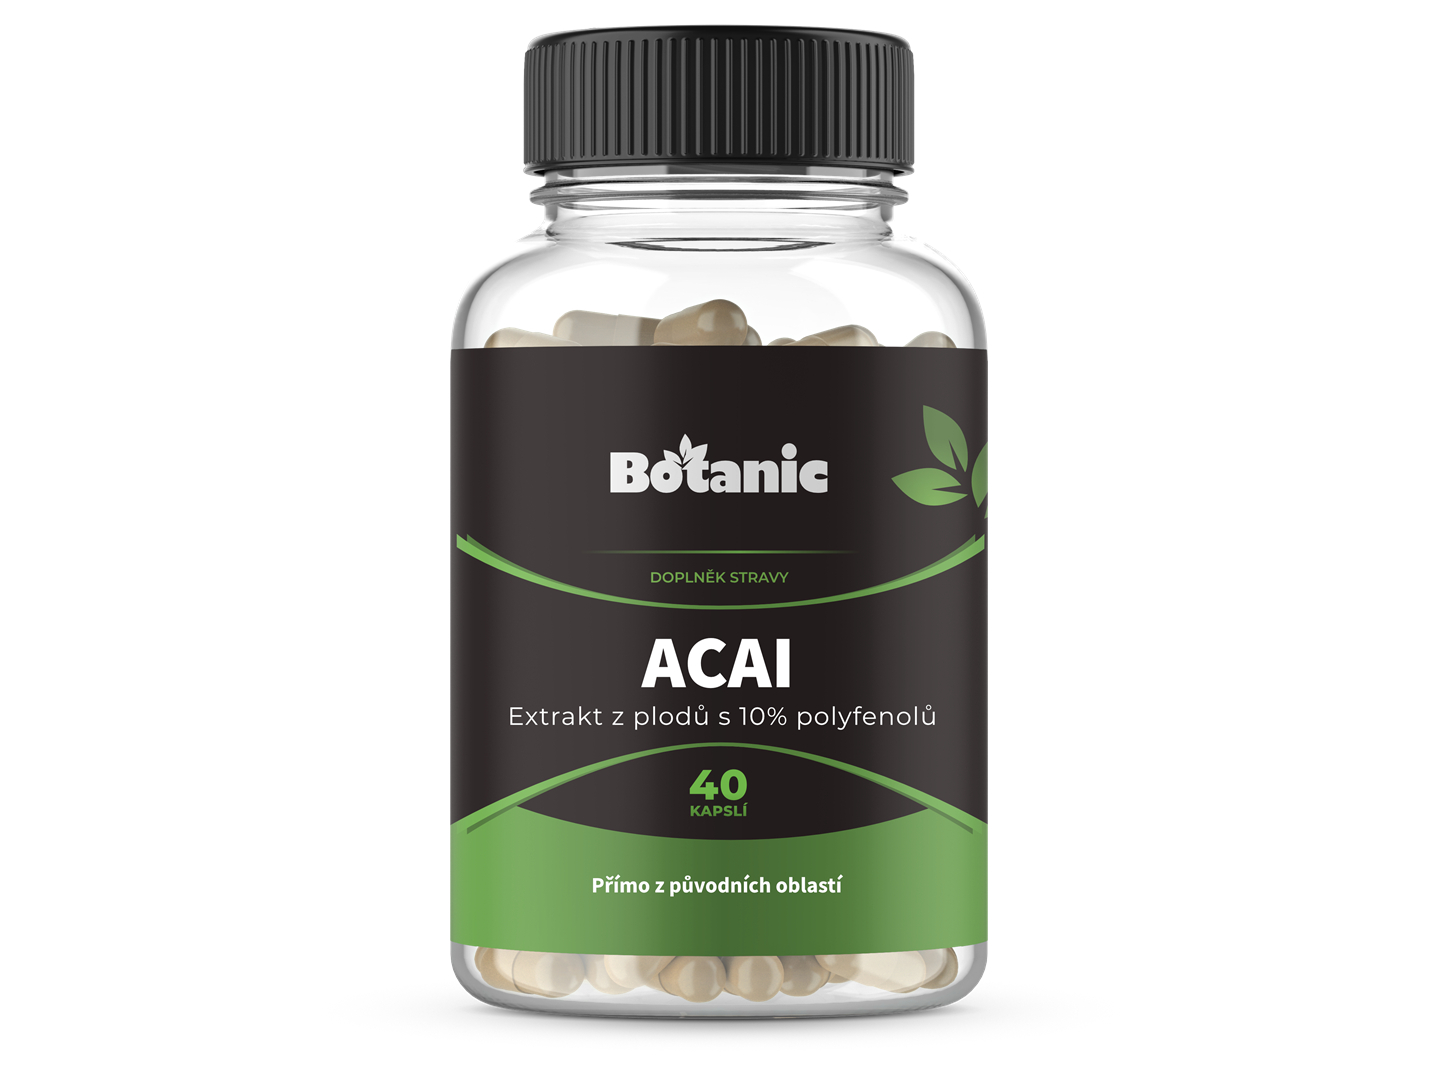 Botanic Acai - Extrakt z plodů s 10% polyfenolů v kapslích 40kap.